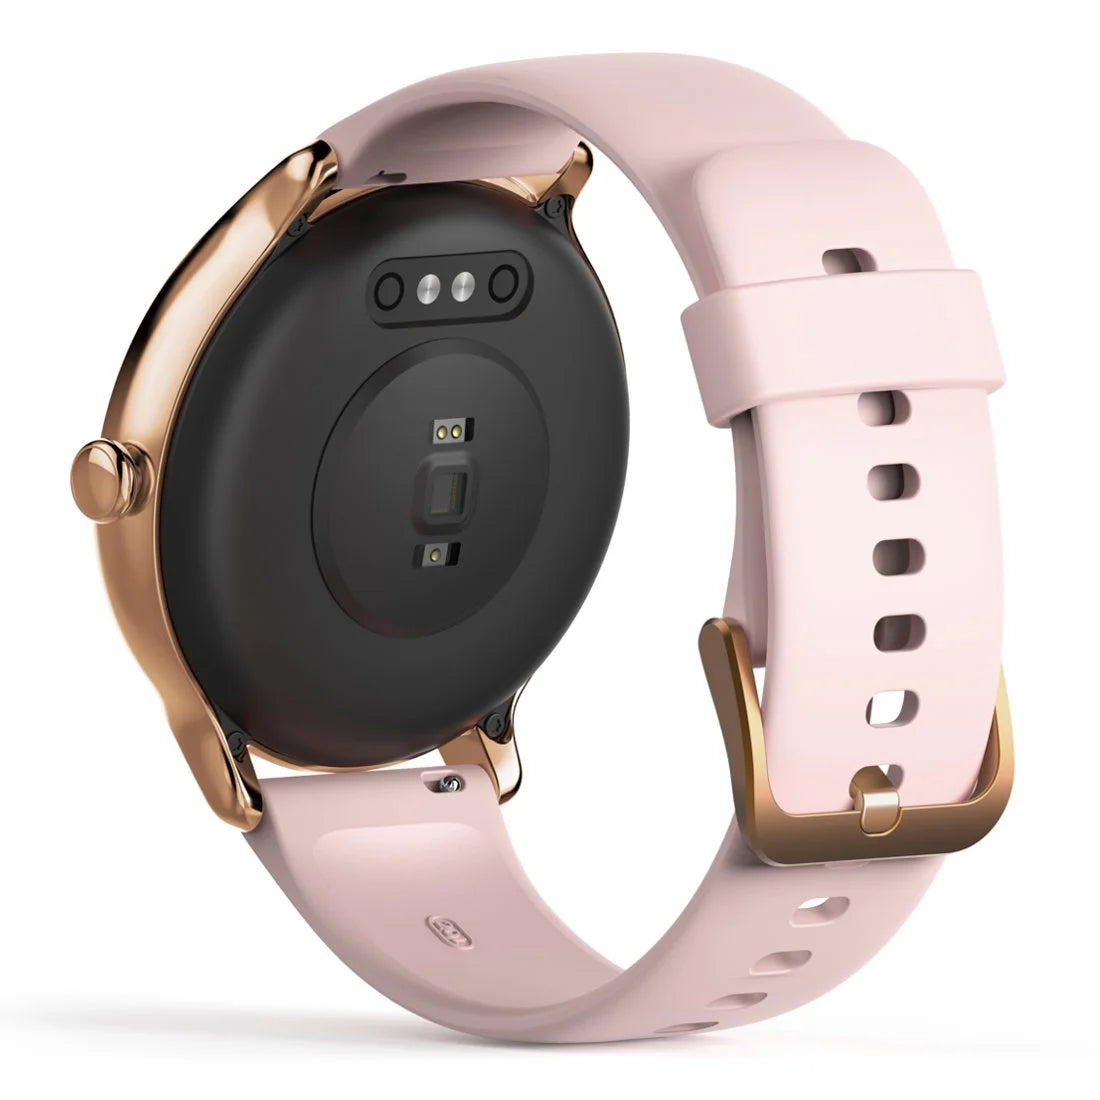 Elegancki smartwatch damski Hama Fit Watch 4910 złota ramka różowy pasek